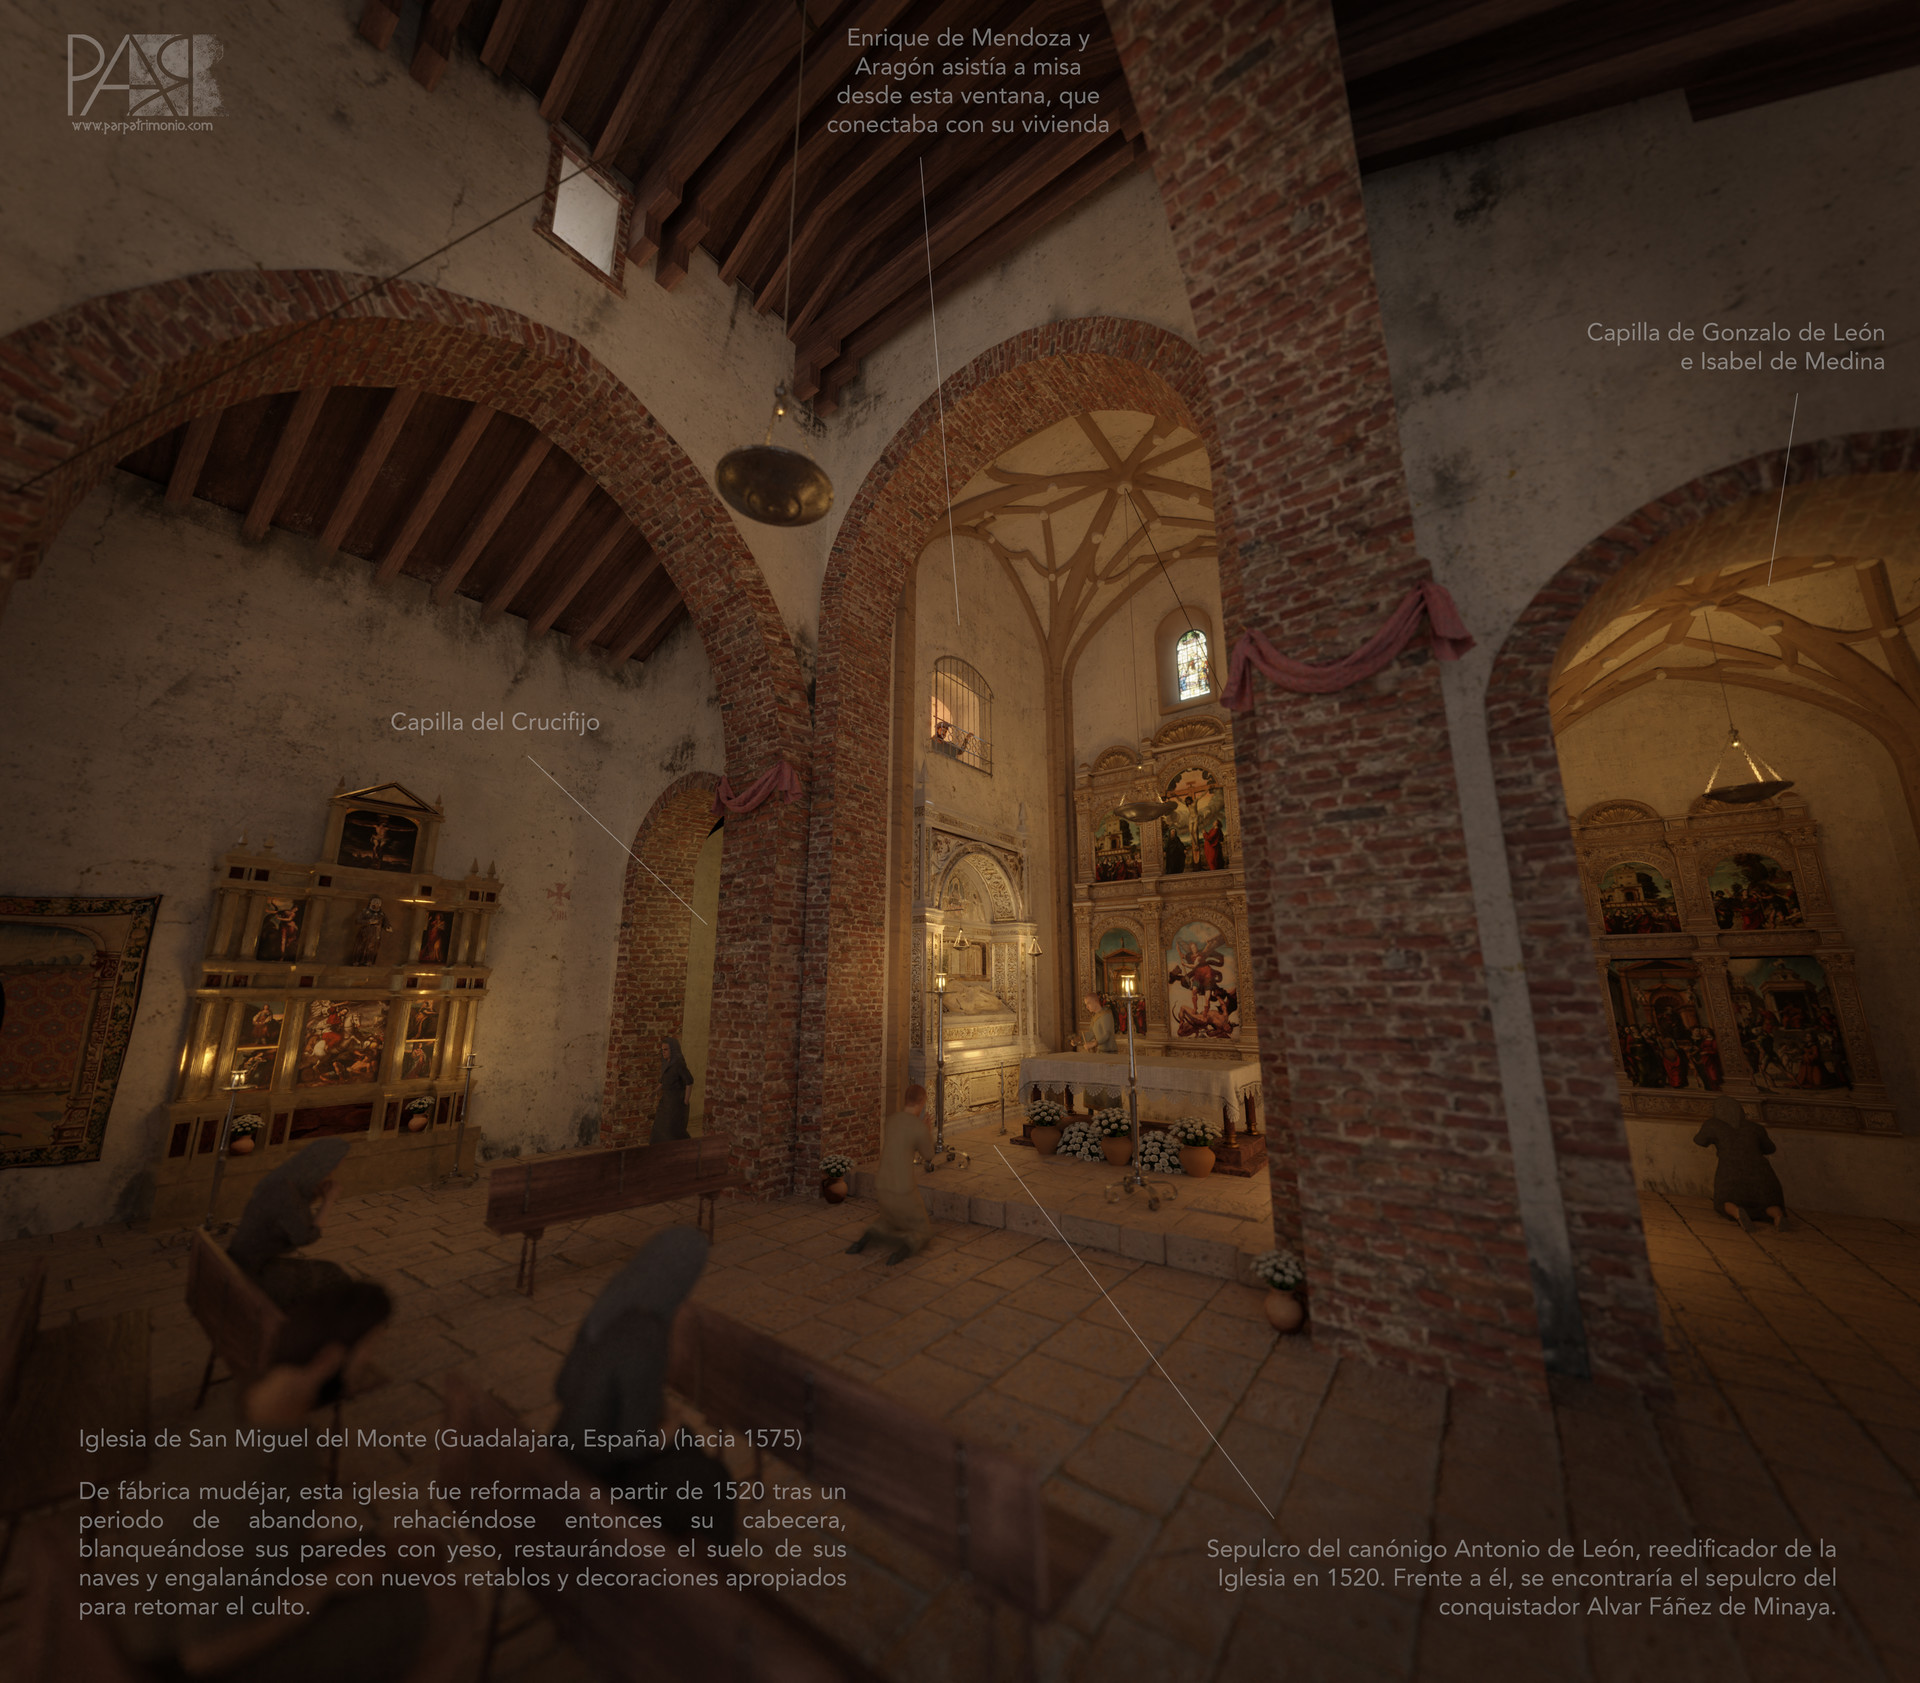 ArtStation - Recreación en 3D del interior de la iglesia de San Miguel del  Monte (Guadalajara) en el s. XVI.